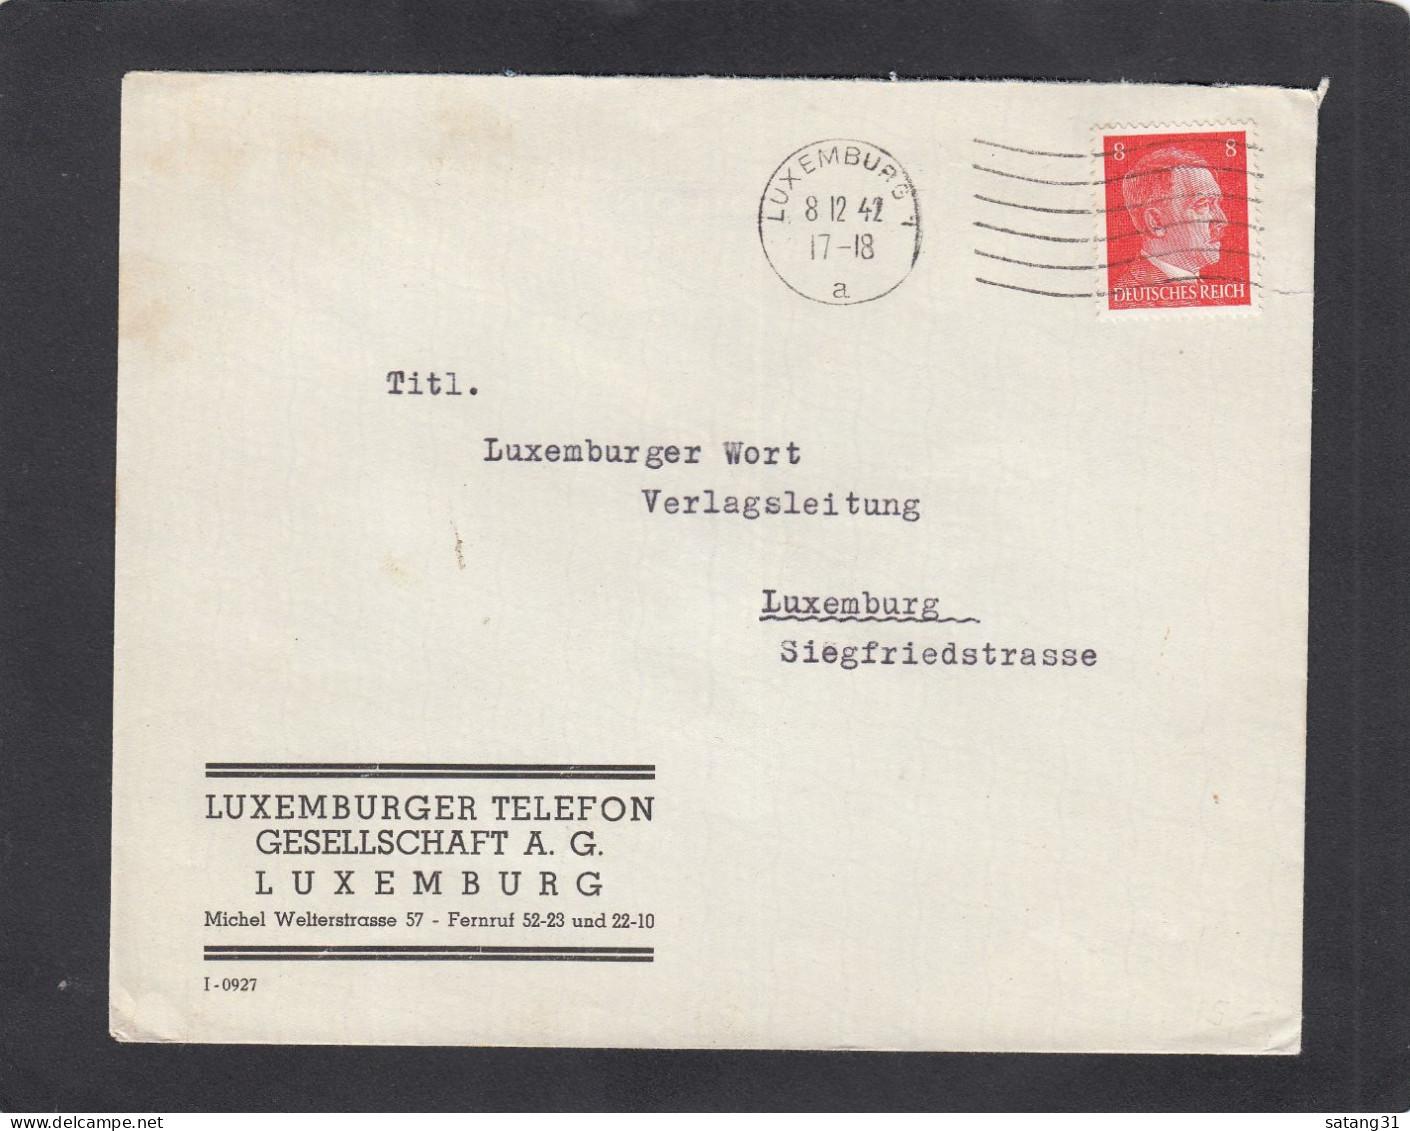 LUXEMBURGER TELEFON GESELLSCHAFT A.G., LUXEMBURG. - 1940-1944 Ocupación Alemana